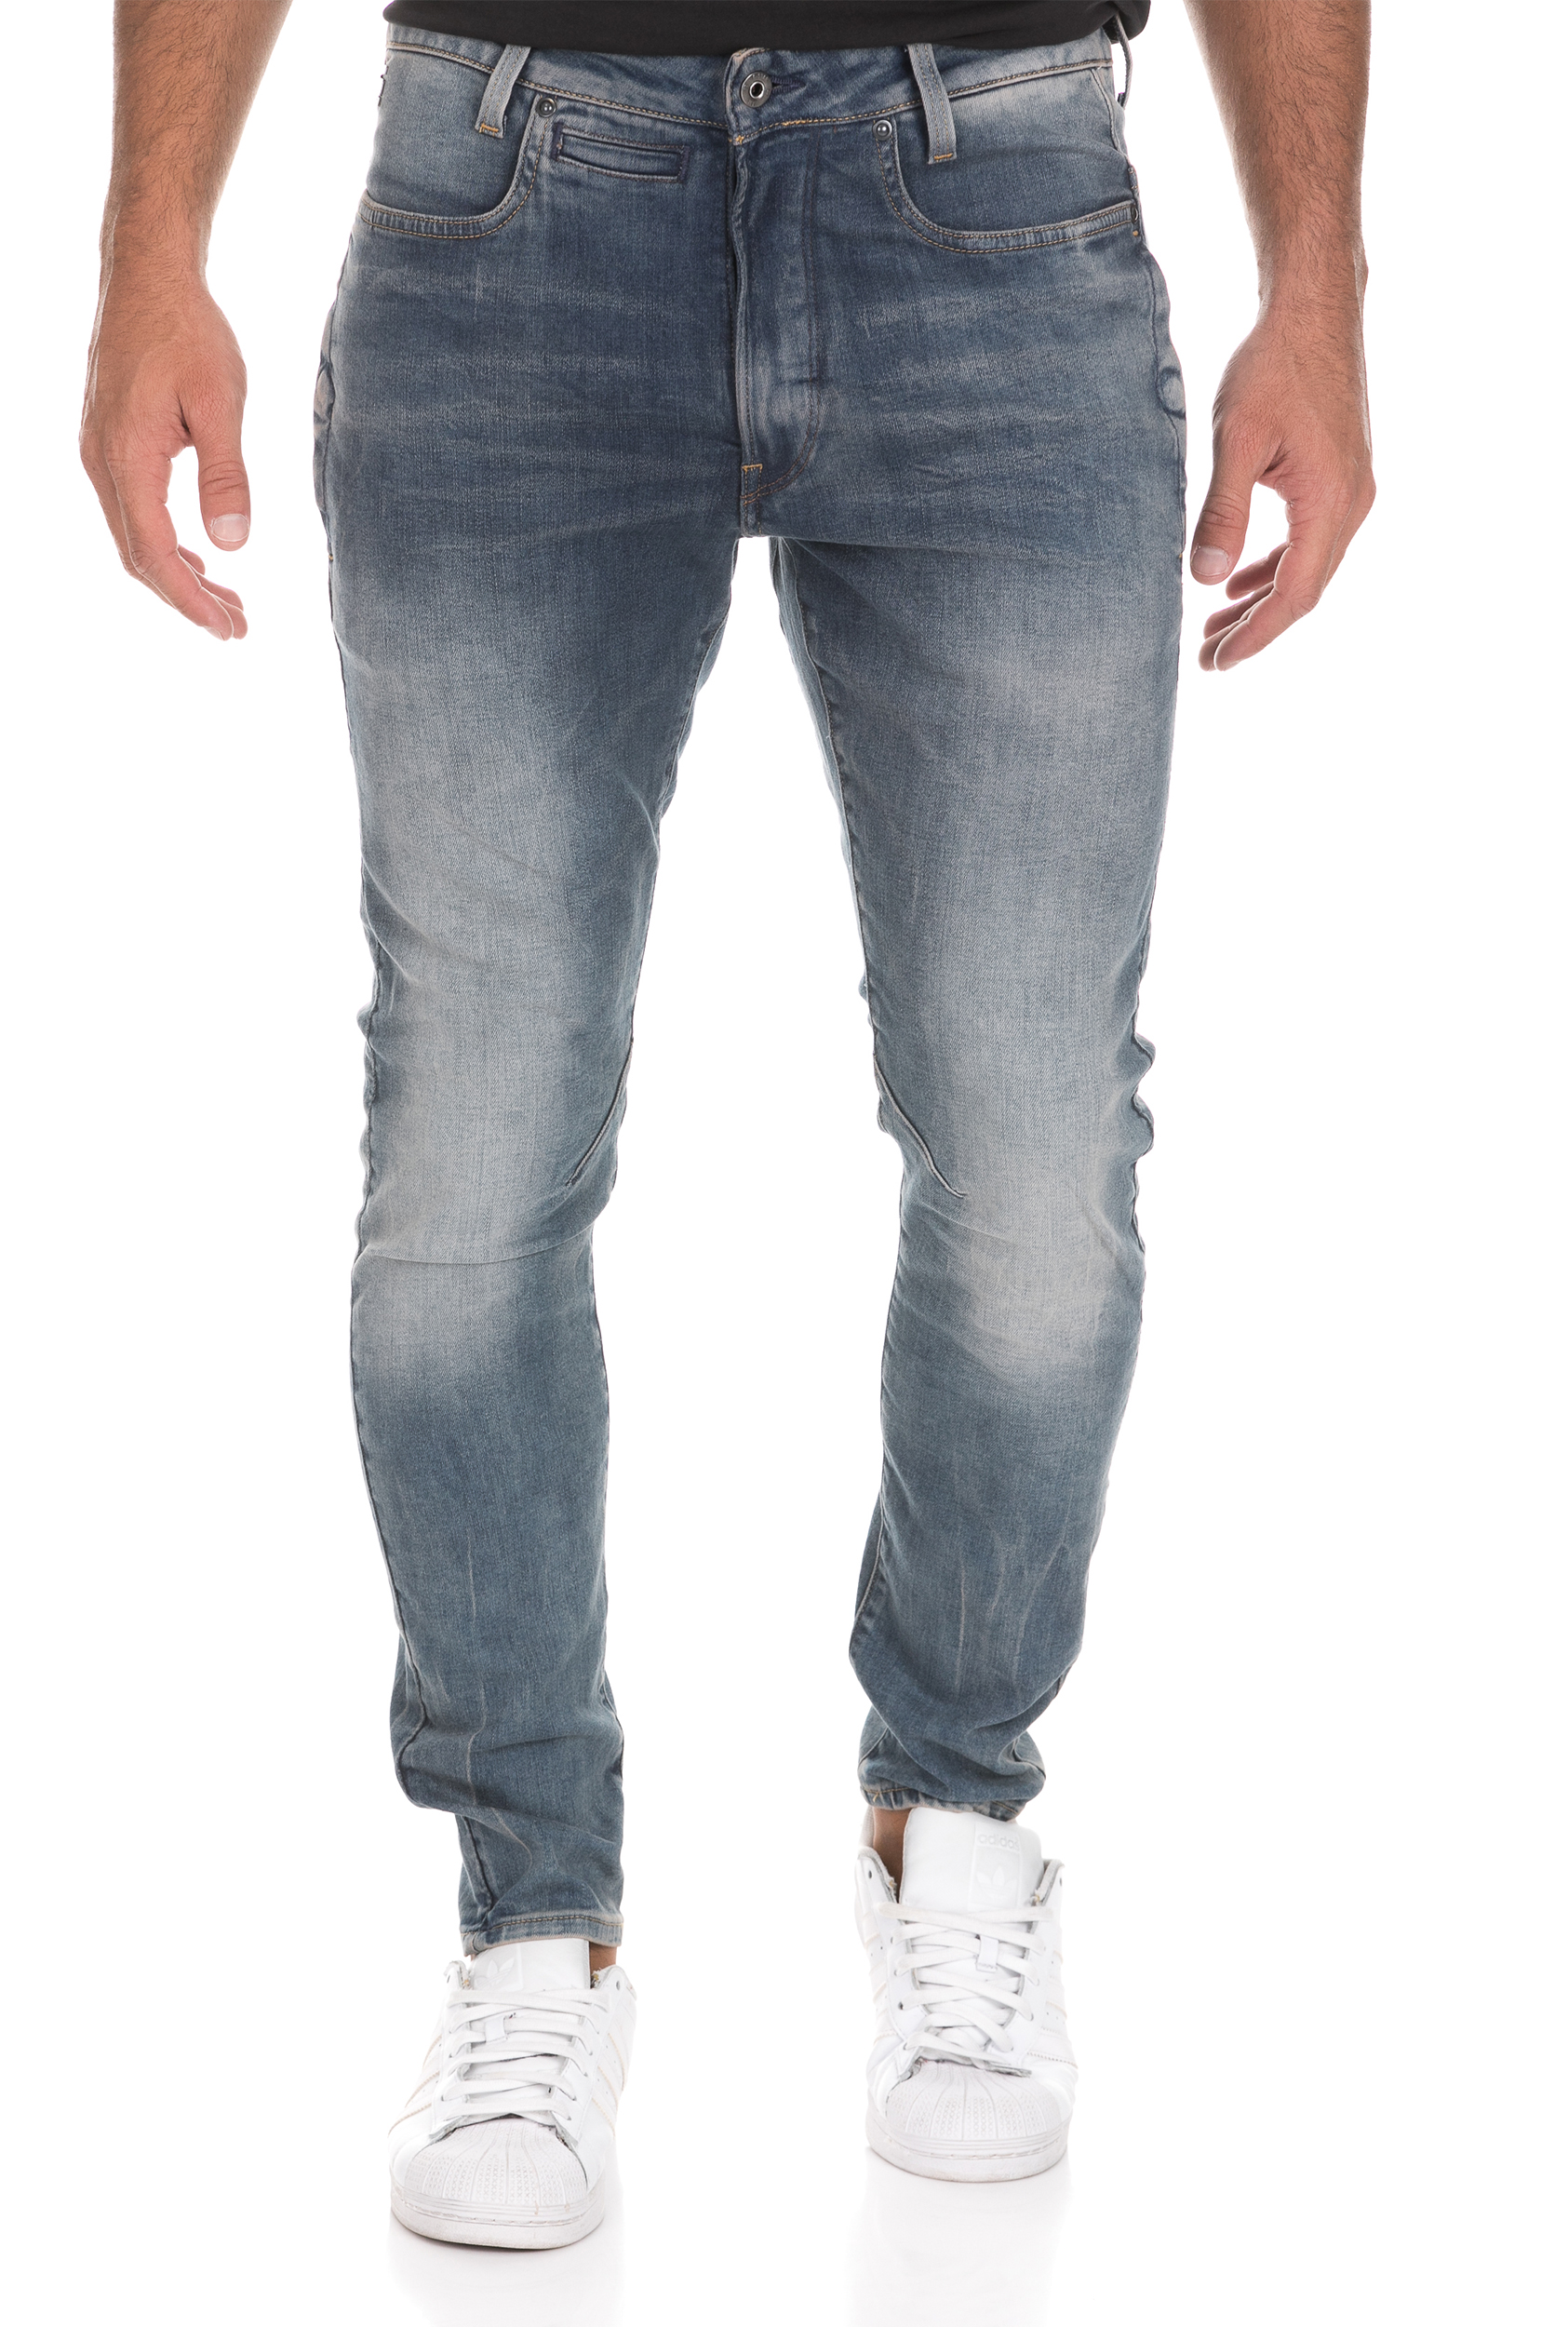 Ανδρικά/Ρούχα/Τζίν/Skinny G-STAR - Ανδρικό τζιν παντελόνι 3D SUPER SLIM μπλε